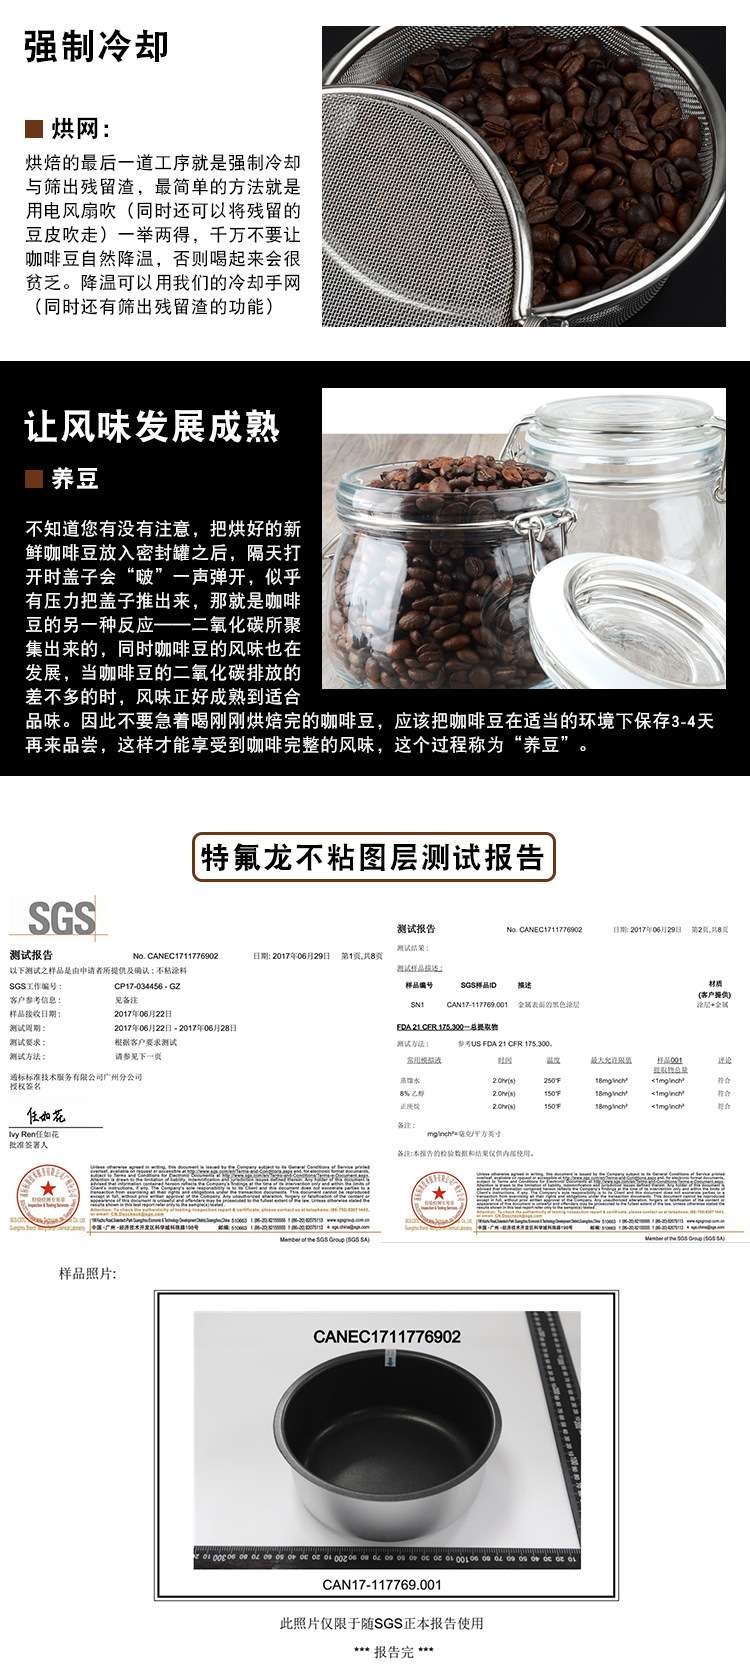 咖啡烘豆机养生锅家用爆米花机生豆干果花生烘焙炒货机果皮茶机详情图8